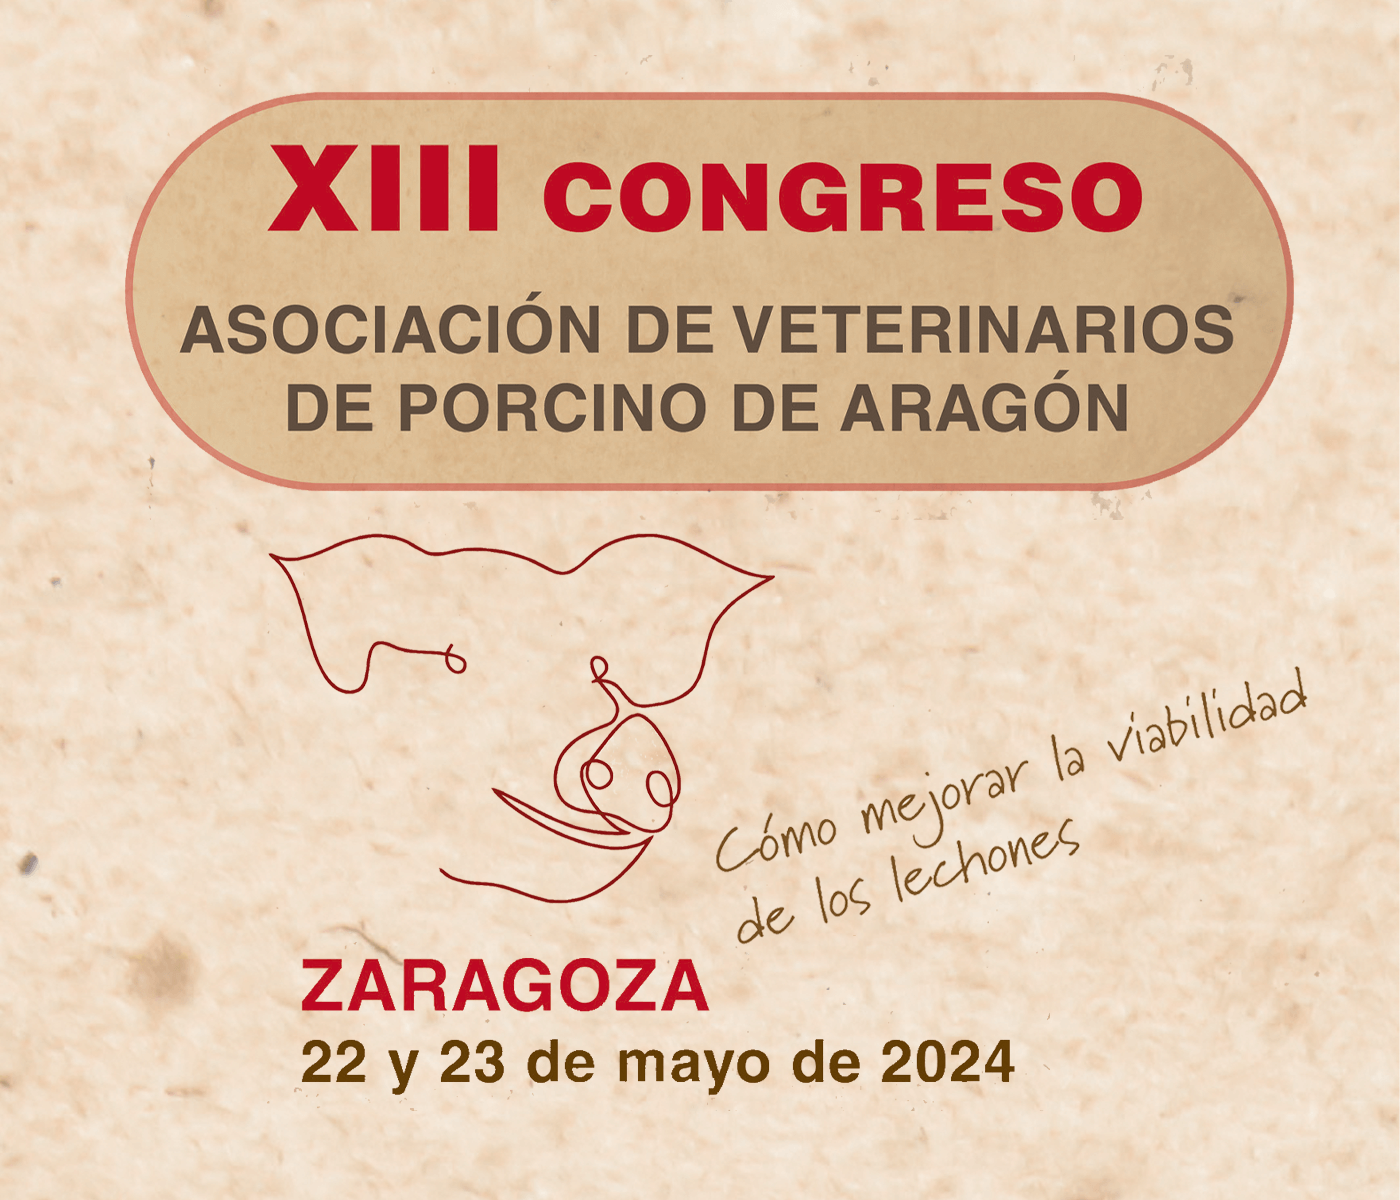 Queda menos de un mes para la celebración del XIII Congreso de la Asociación de Veterinarios de Porcino de Aragón (AVPA)